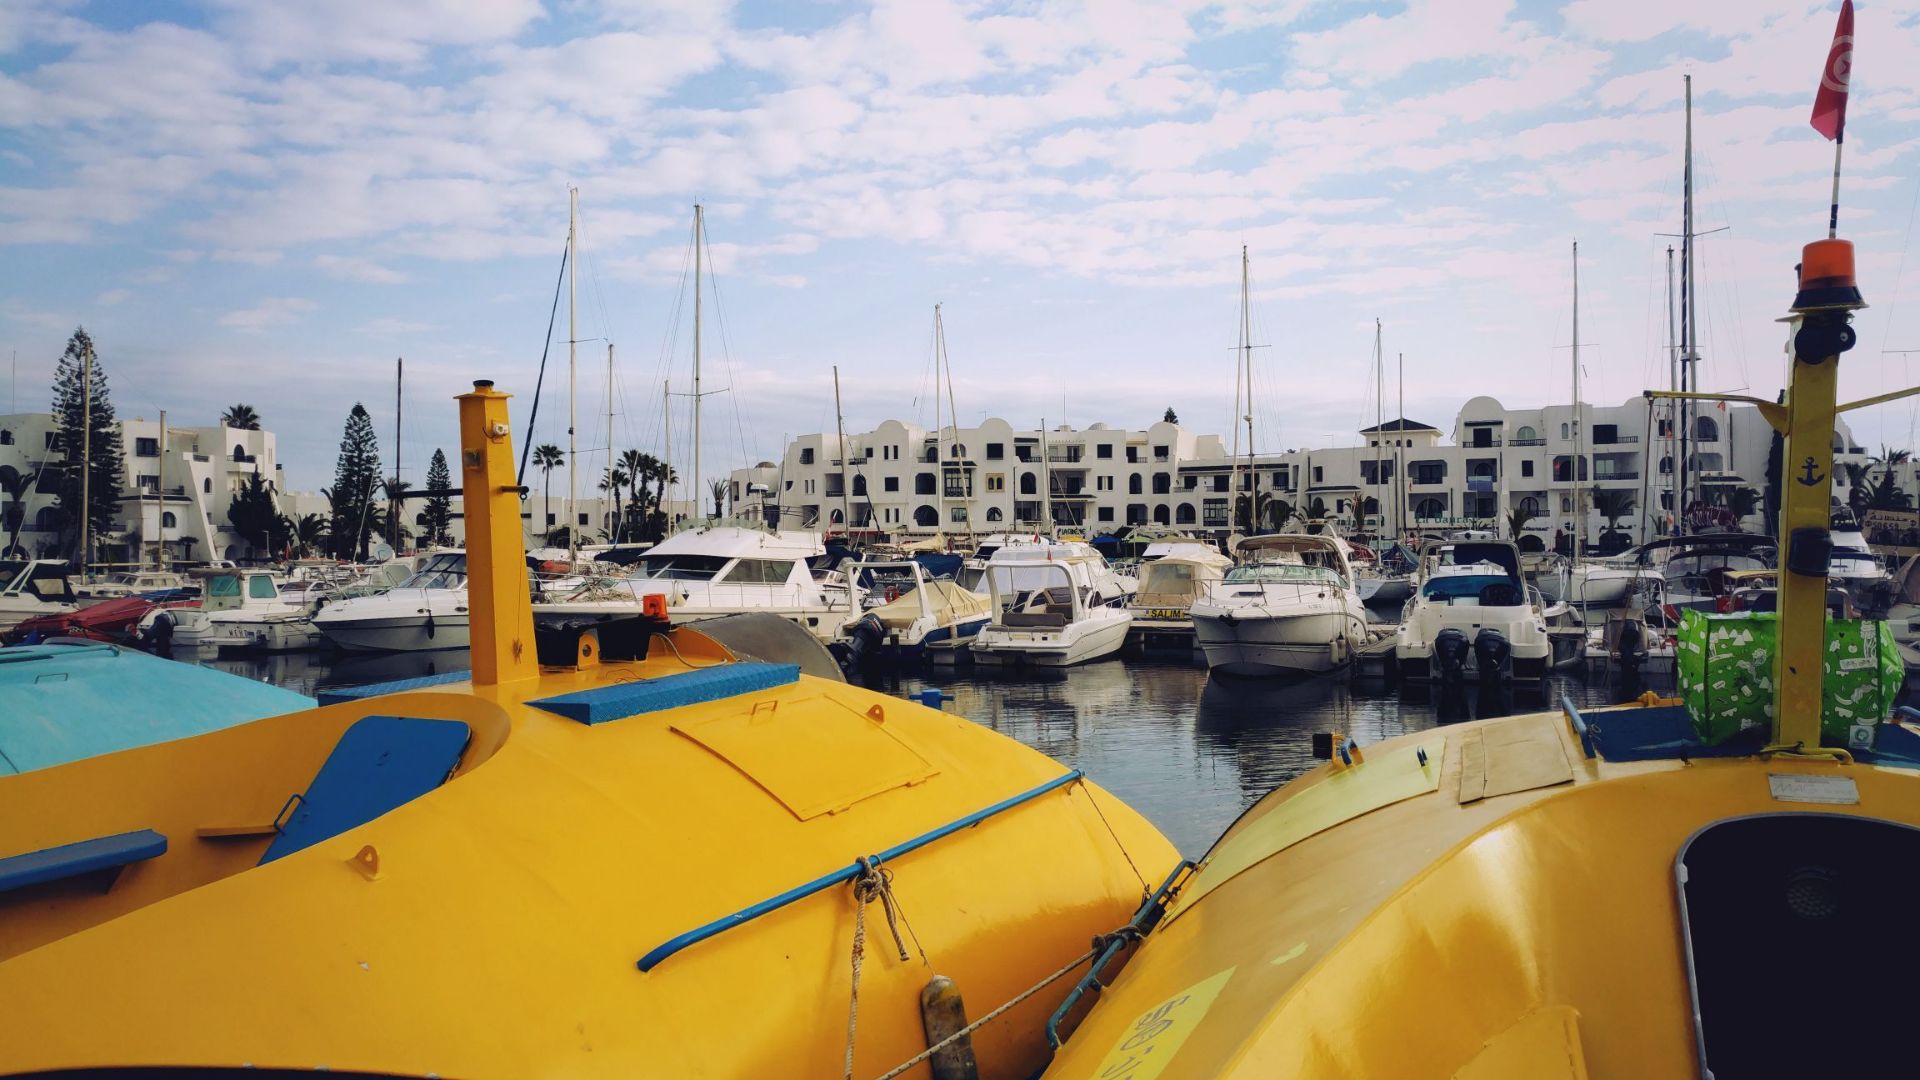 地中海之滨苏斯老城堡旁，万千风情的渔人码头-情人港是苏斯的一张靓丽名片。苏斯港湾的深处隐藏着迷人的风